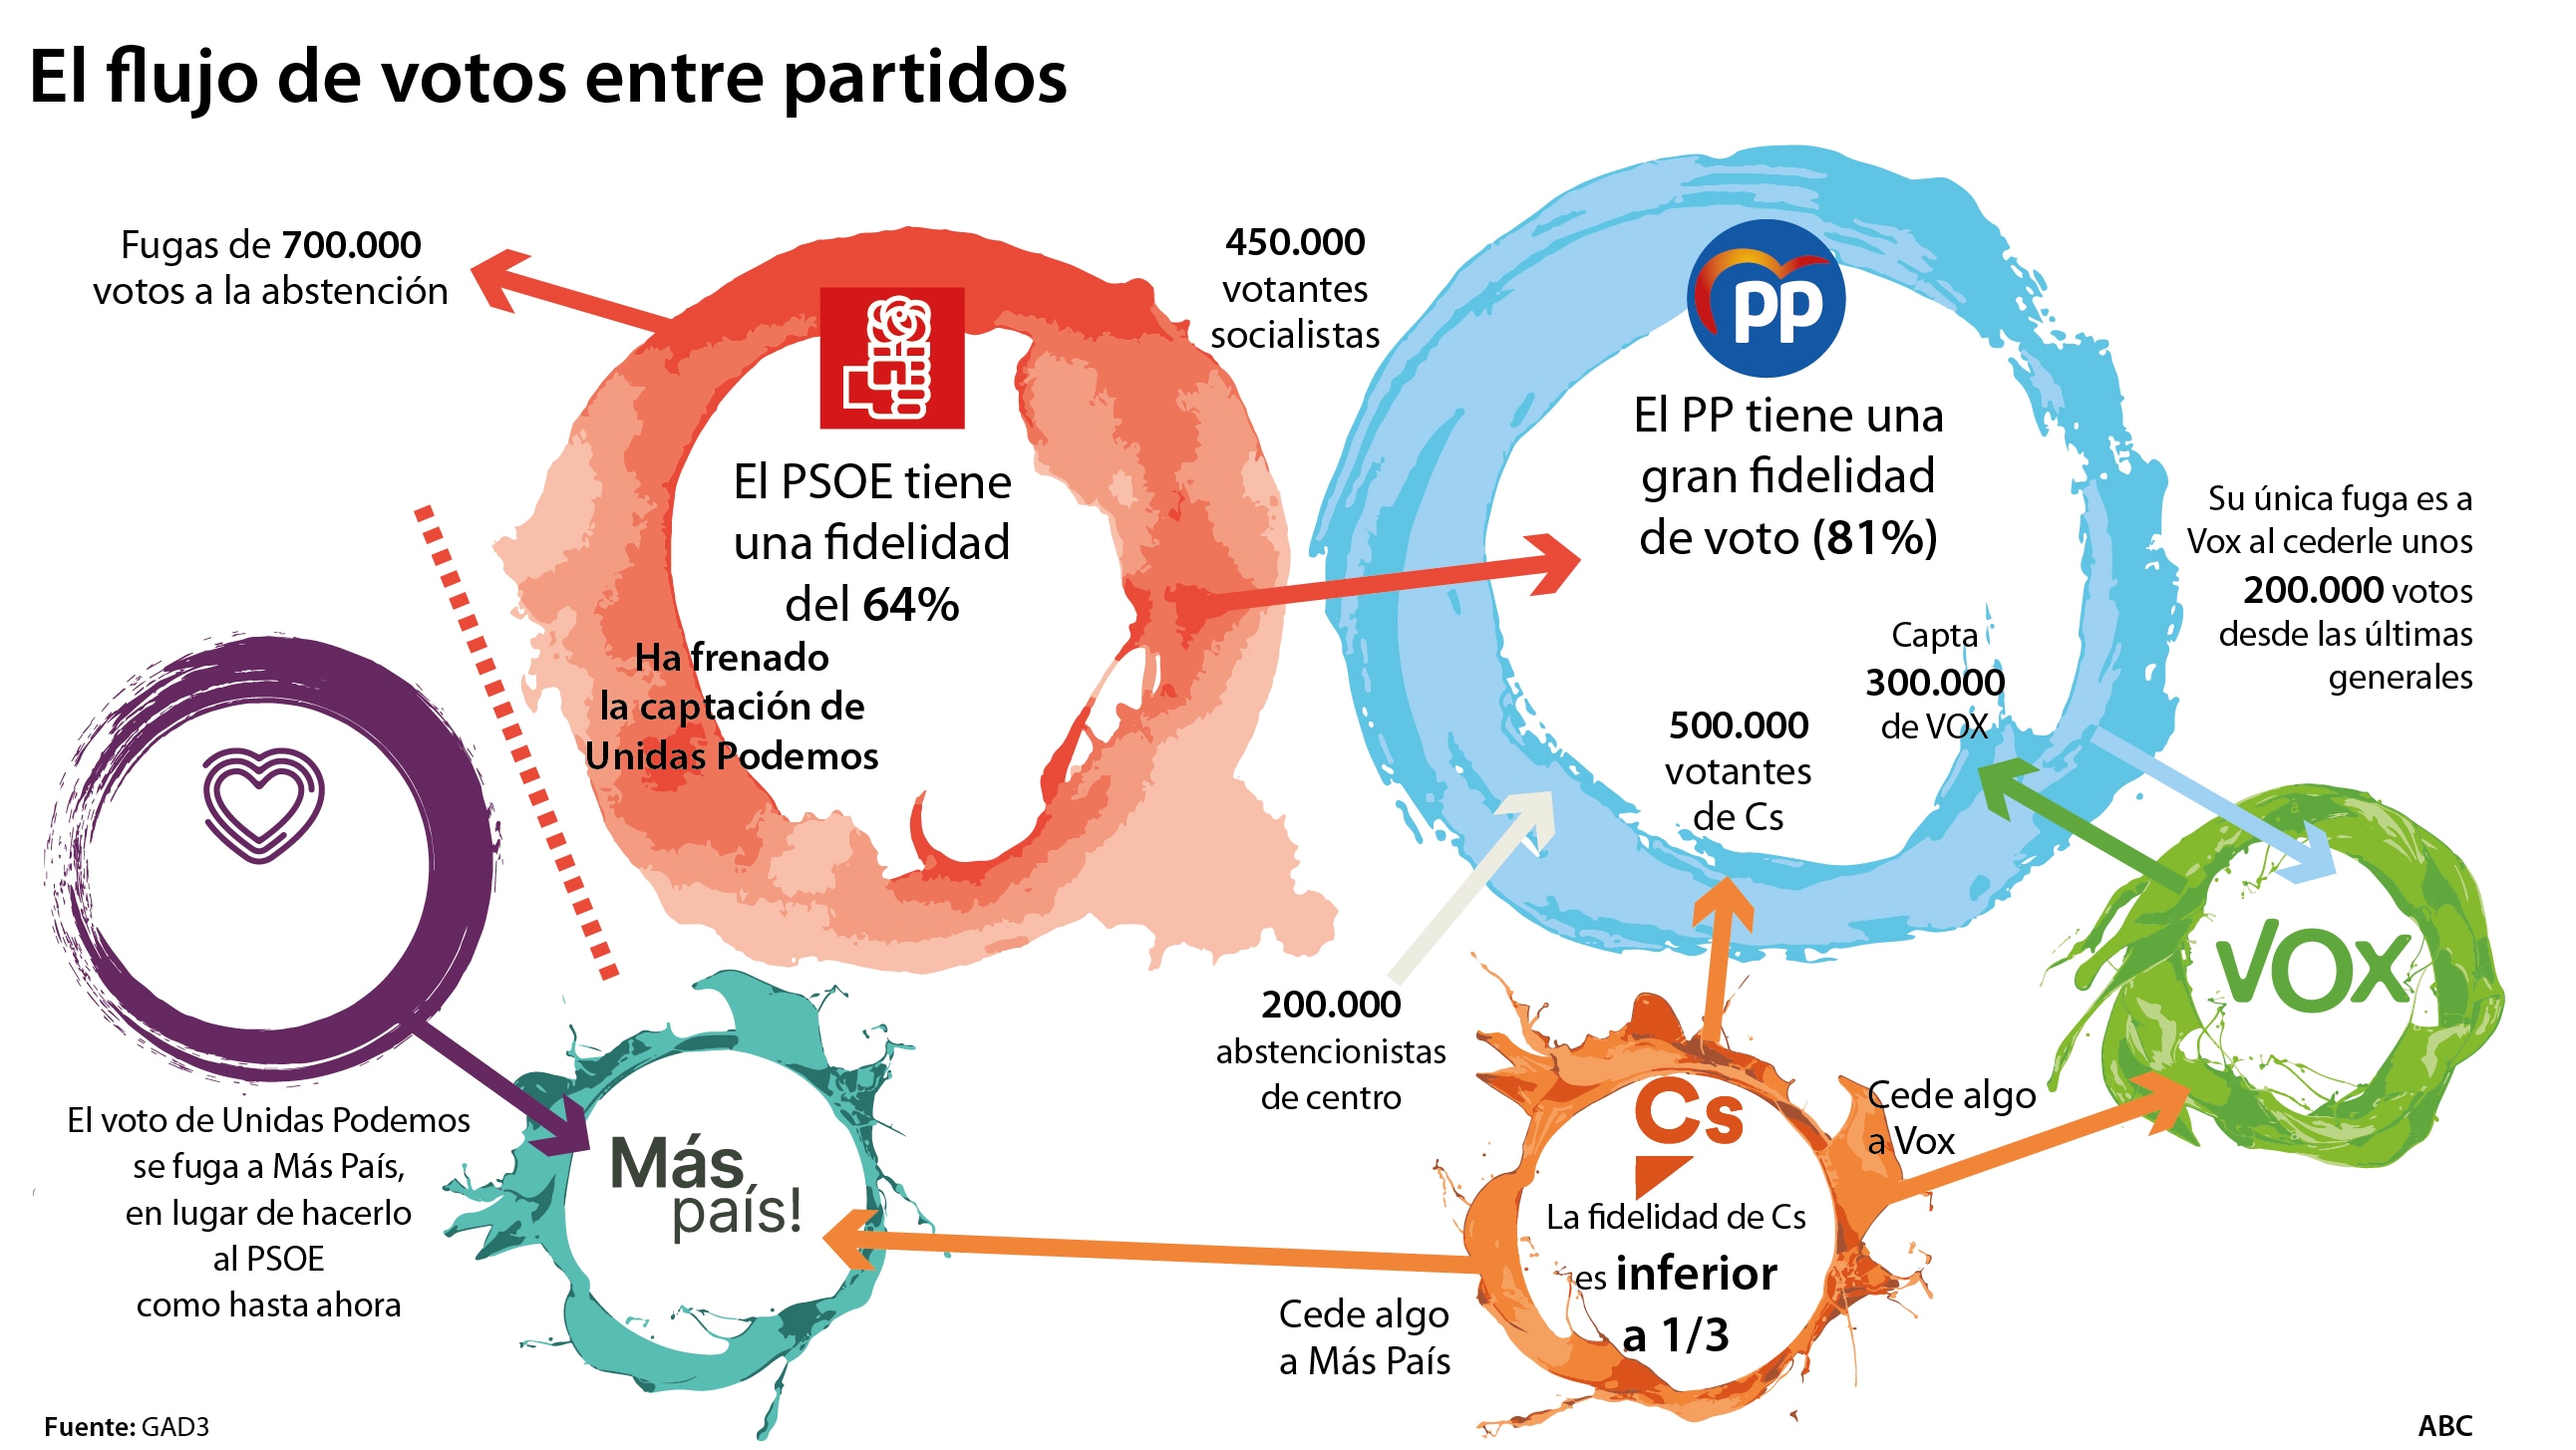 El PP capta un millón de votos de Ciudadanos y PSOE